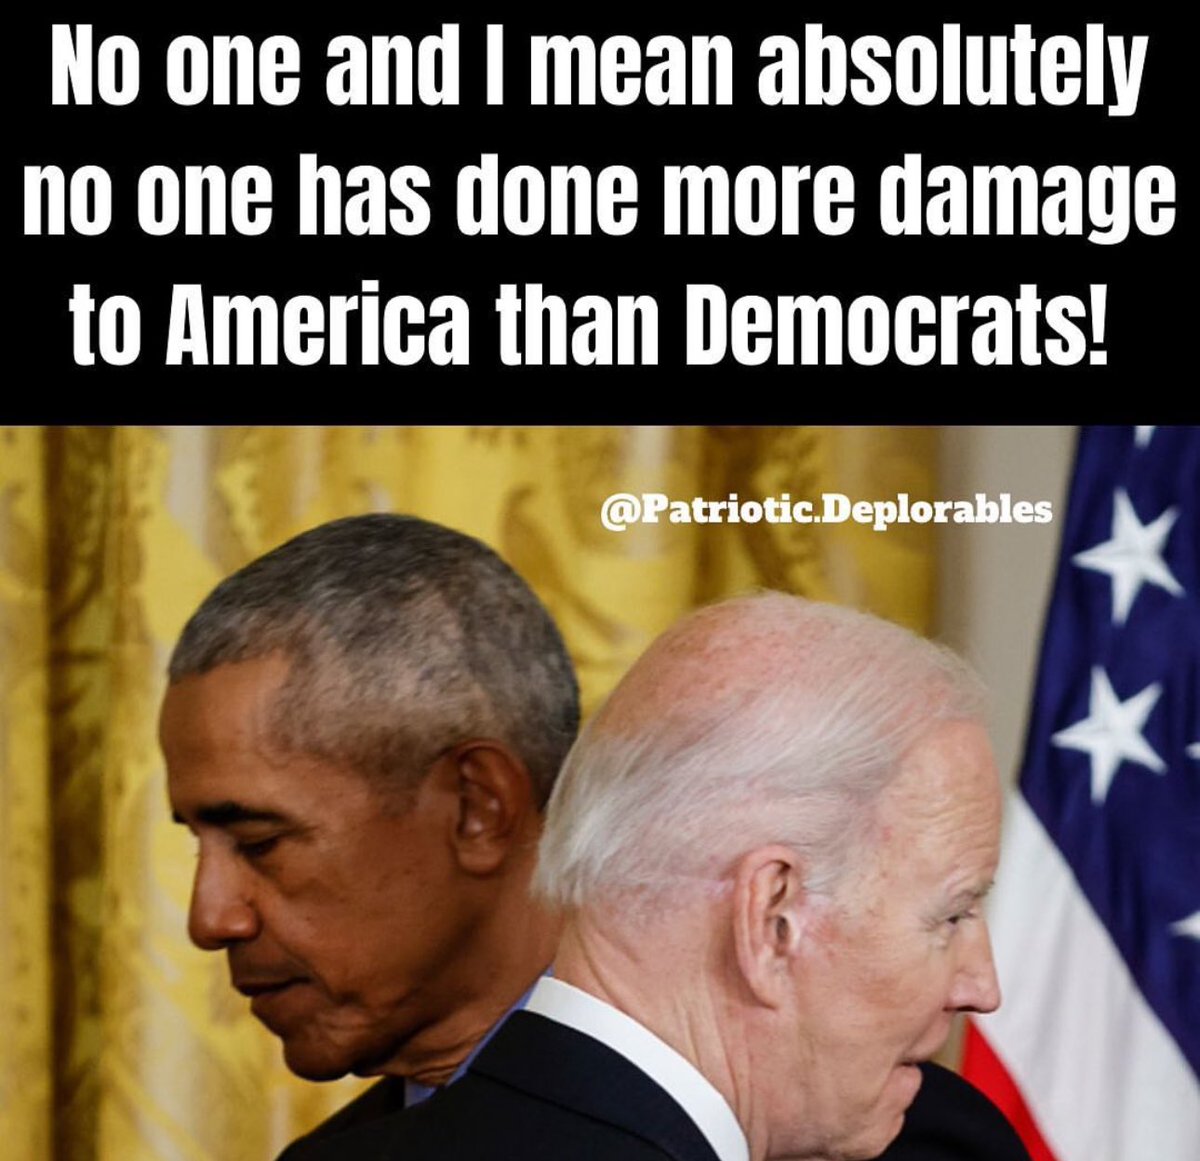 Who agrees? #DemocratsHateAmerica